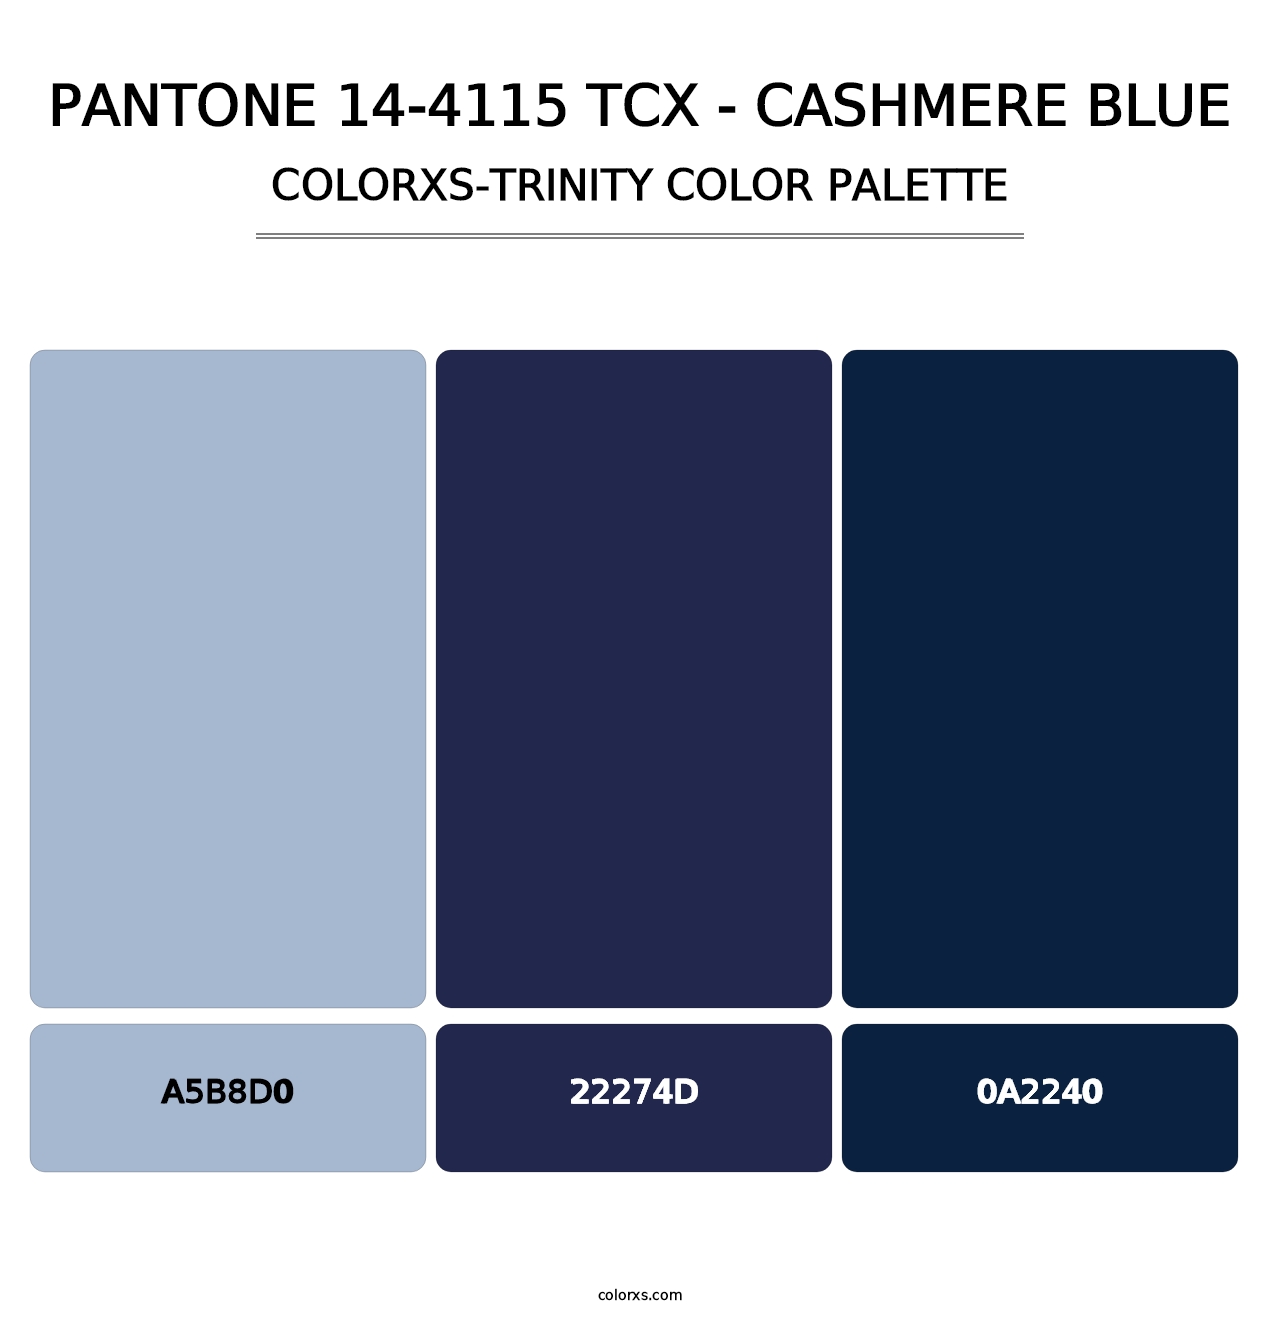 PANTONE 14-4115 TCX - Cashmere Blue - Colorxs Trinity Palette